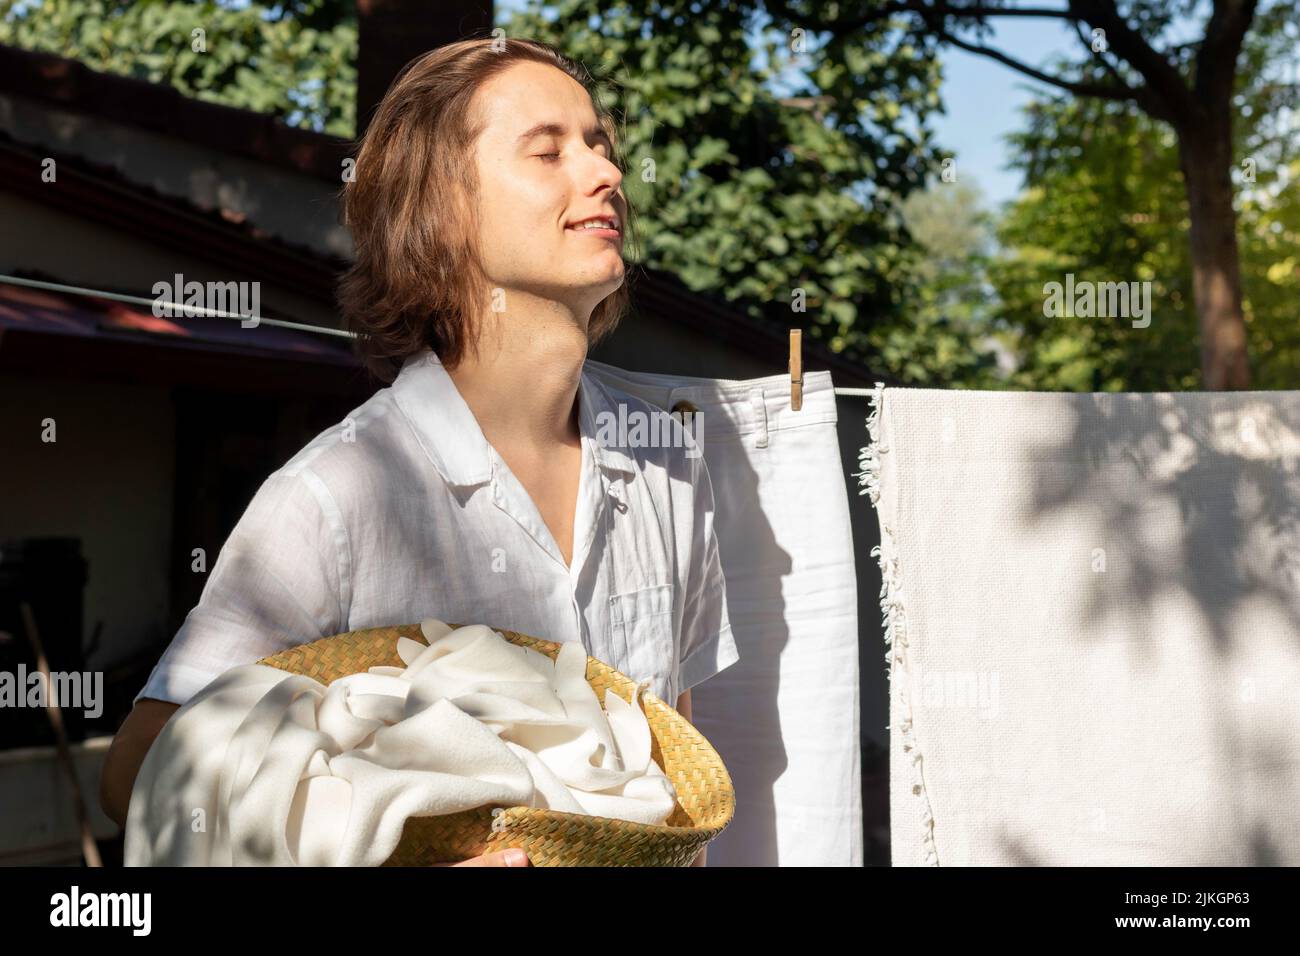 Porträt eines jungen Mannes, der im Garten Hausarbeiten als Wäsche macht, mit geschlossenen Augen und der Sonne im Sommer im Gesicht Stockfoto